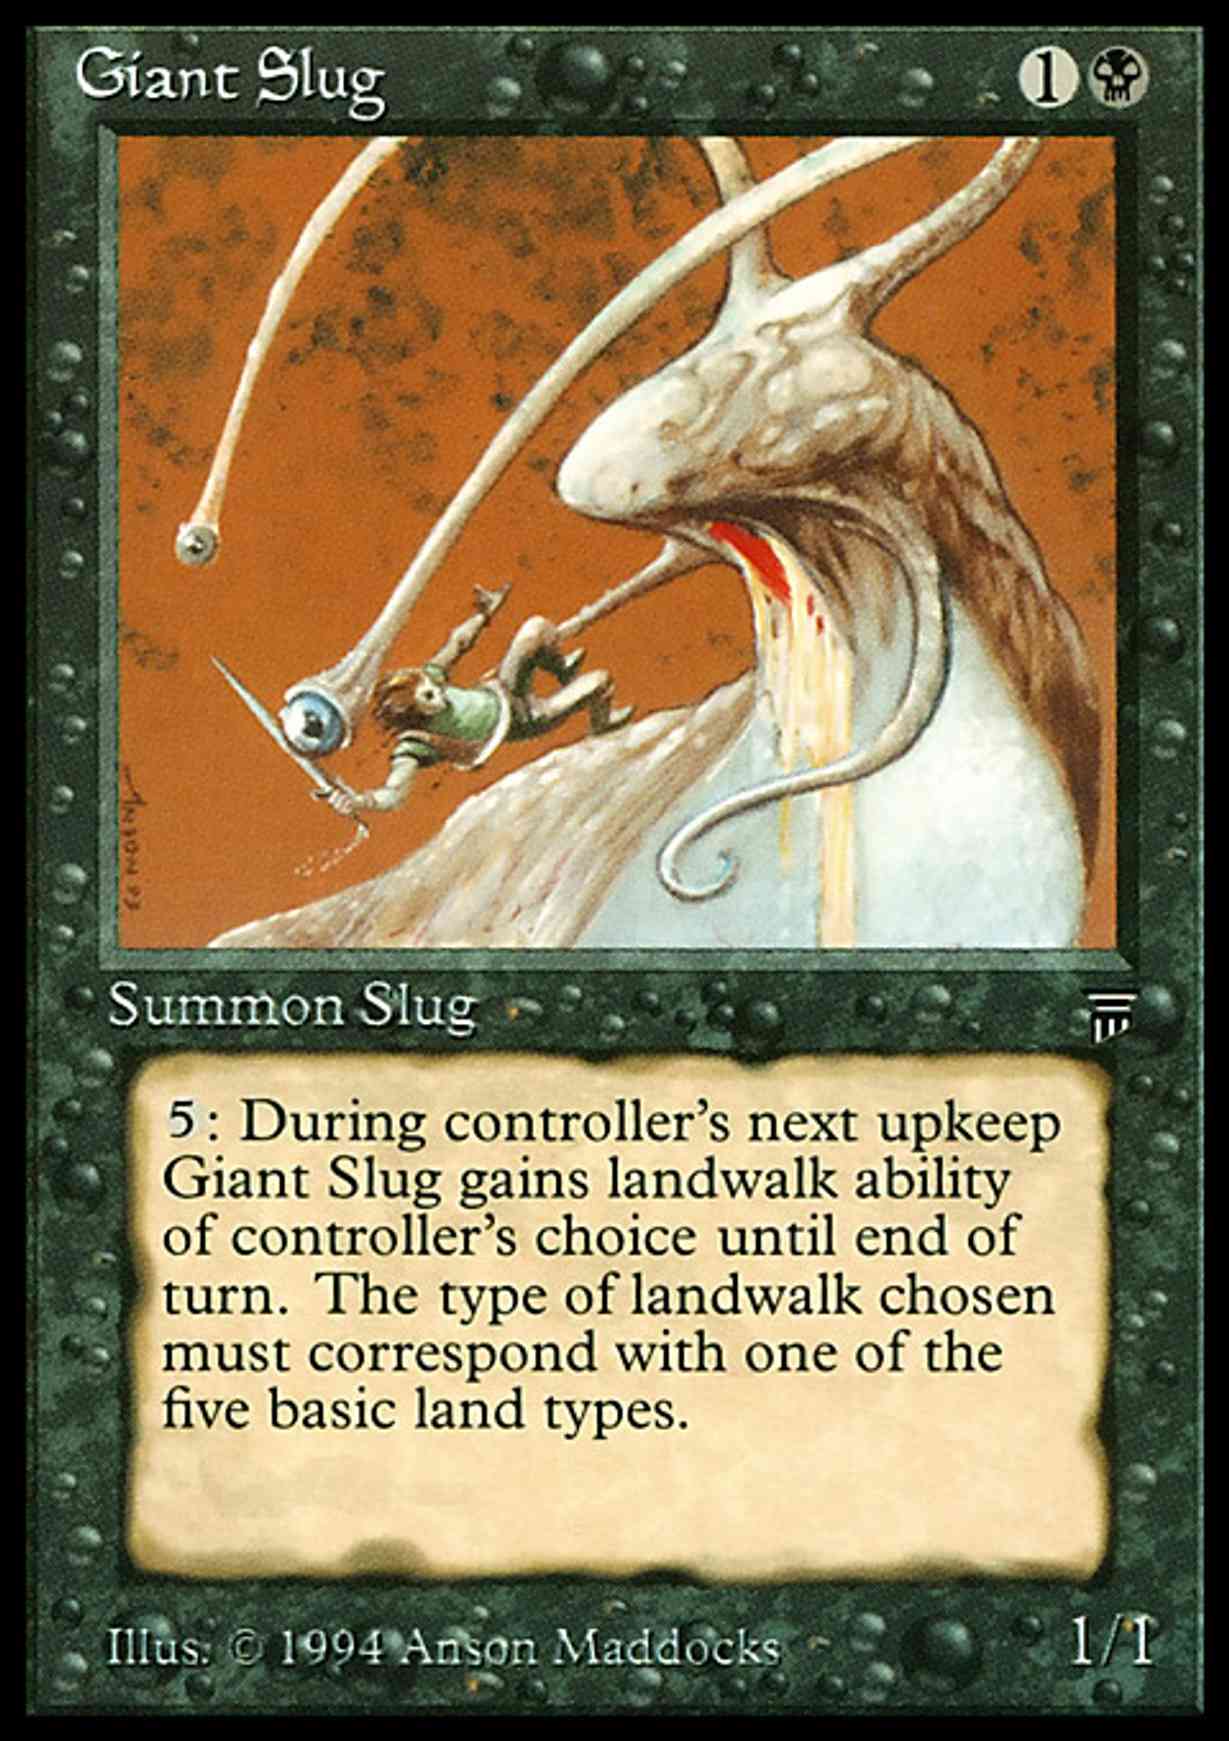 Giant Slug magic card front